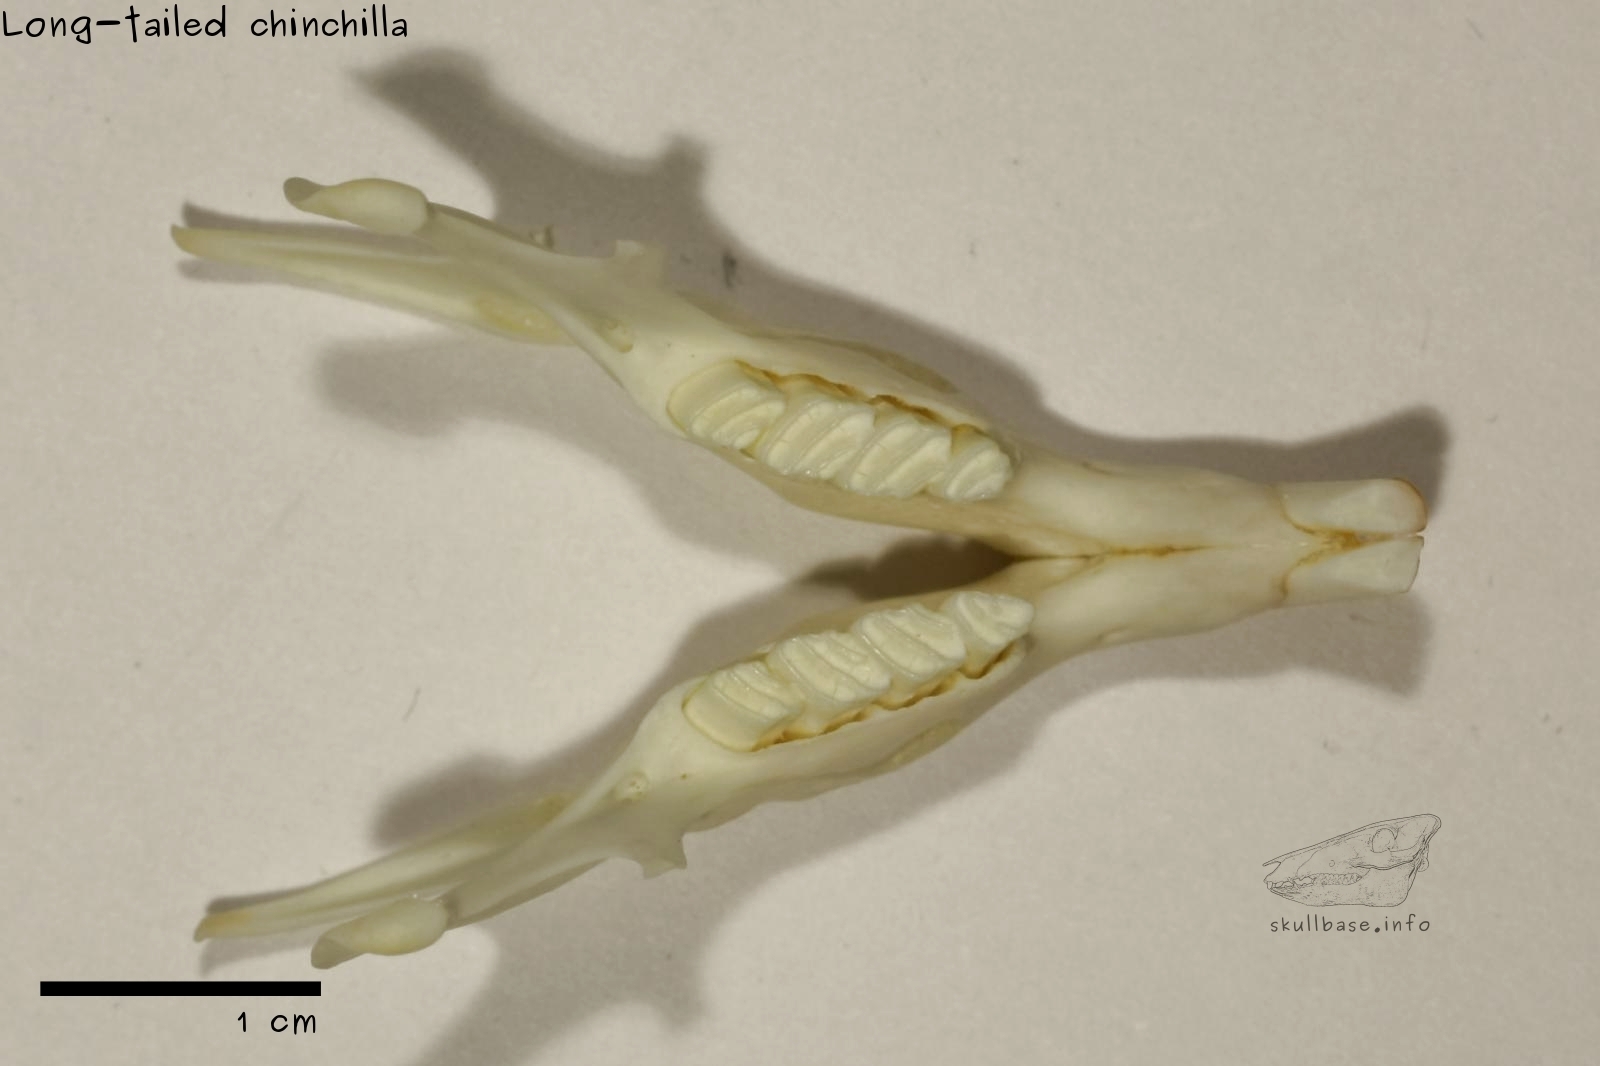 Long-tailed chinchilla (Chinchilla lanigera) jaw